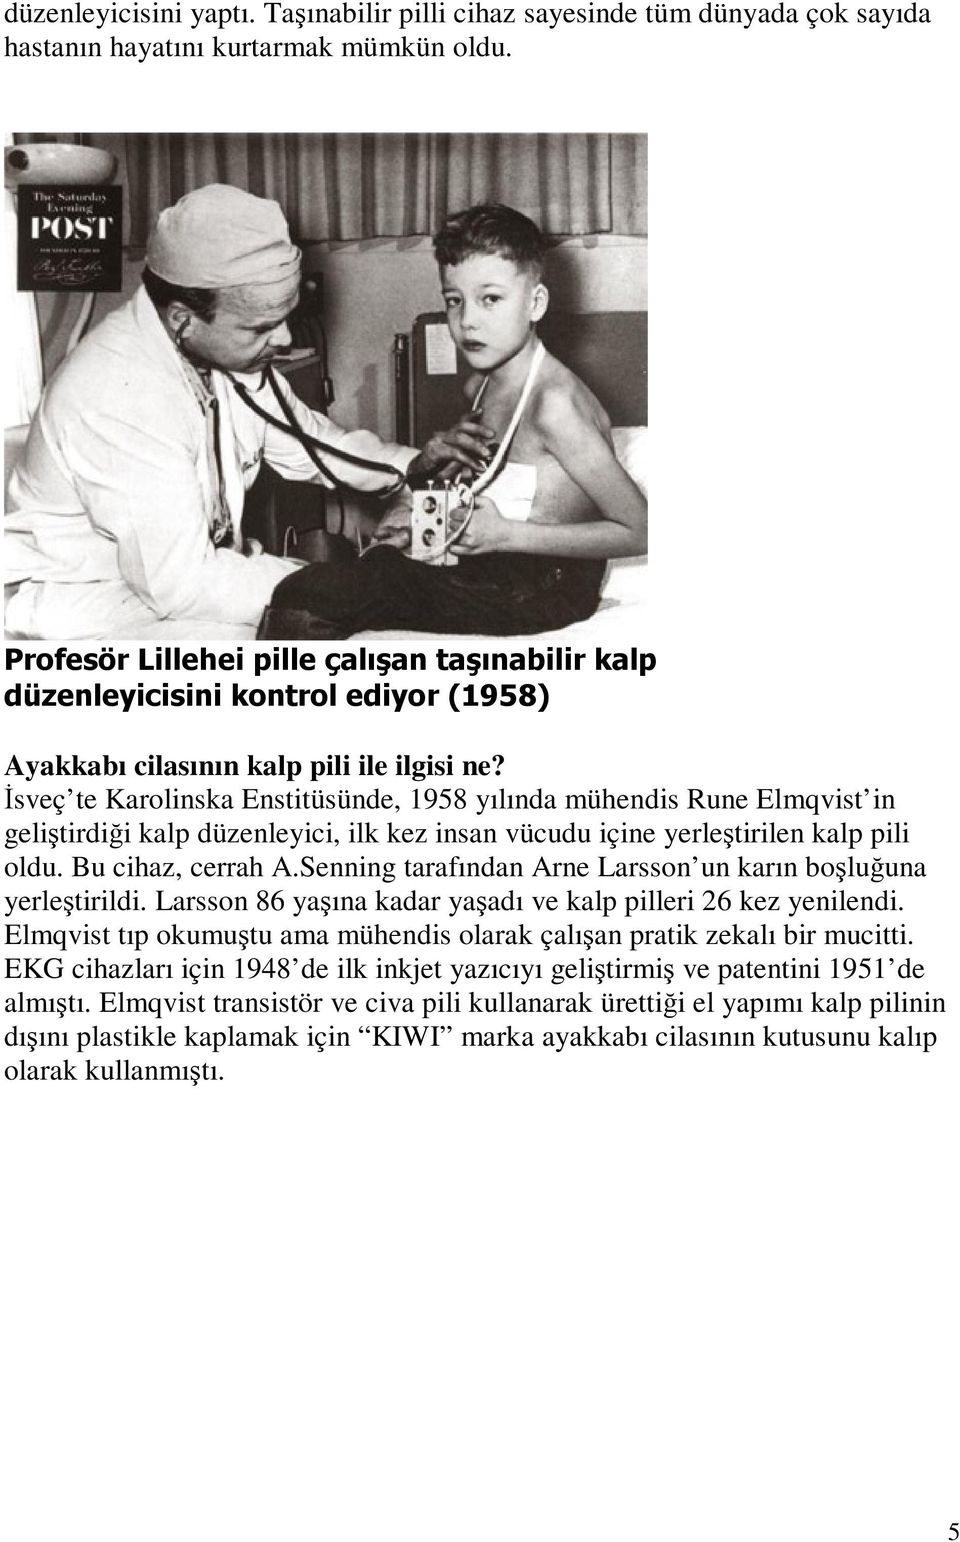 Đsveç te Karolinska Enstitüsünde, 1958 yılında mühendis Rune Elmqvist in geliştirdiği kalp düzenleyici, ilk kez insan vücudu içine yerleştirilen kalp pili oldu. Bu cihaz, cerrah A.